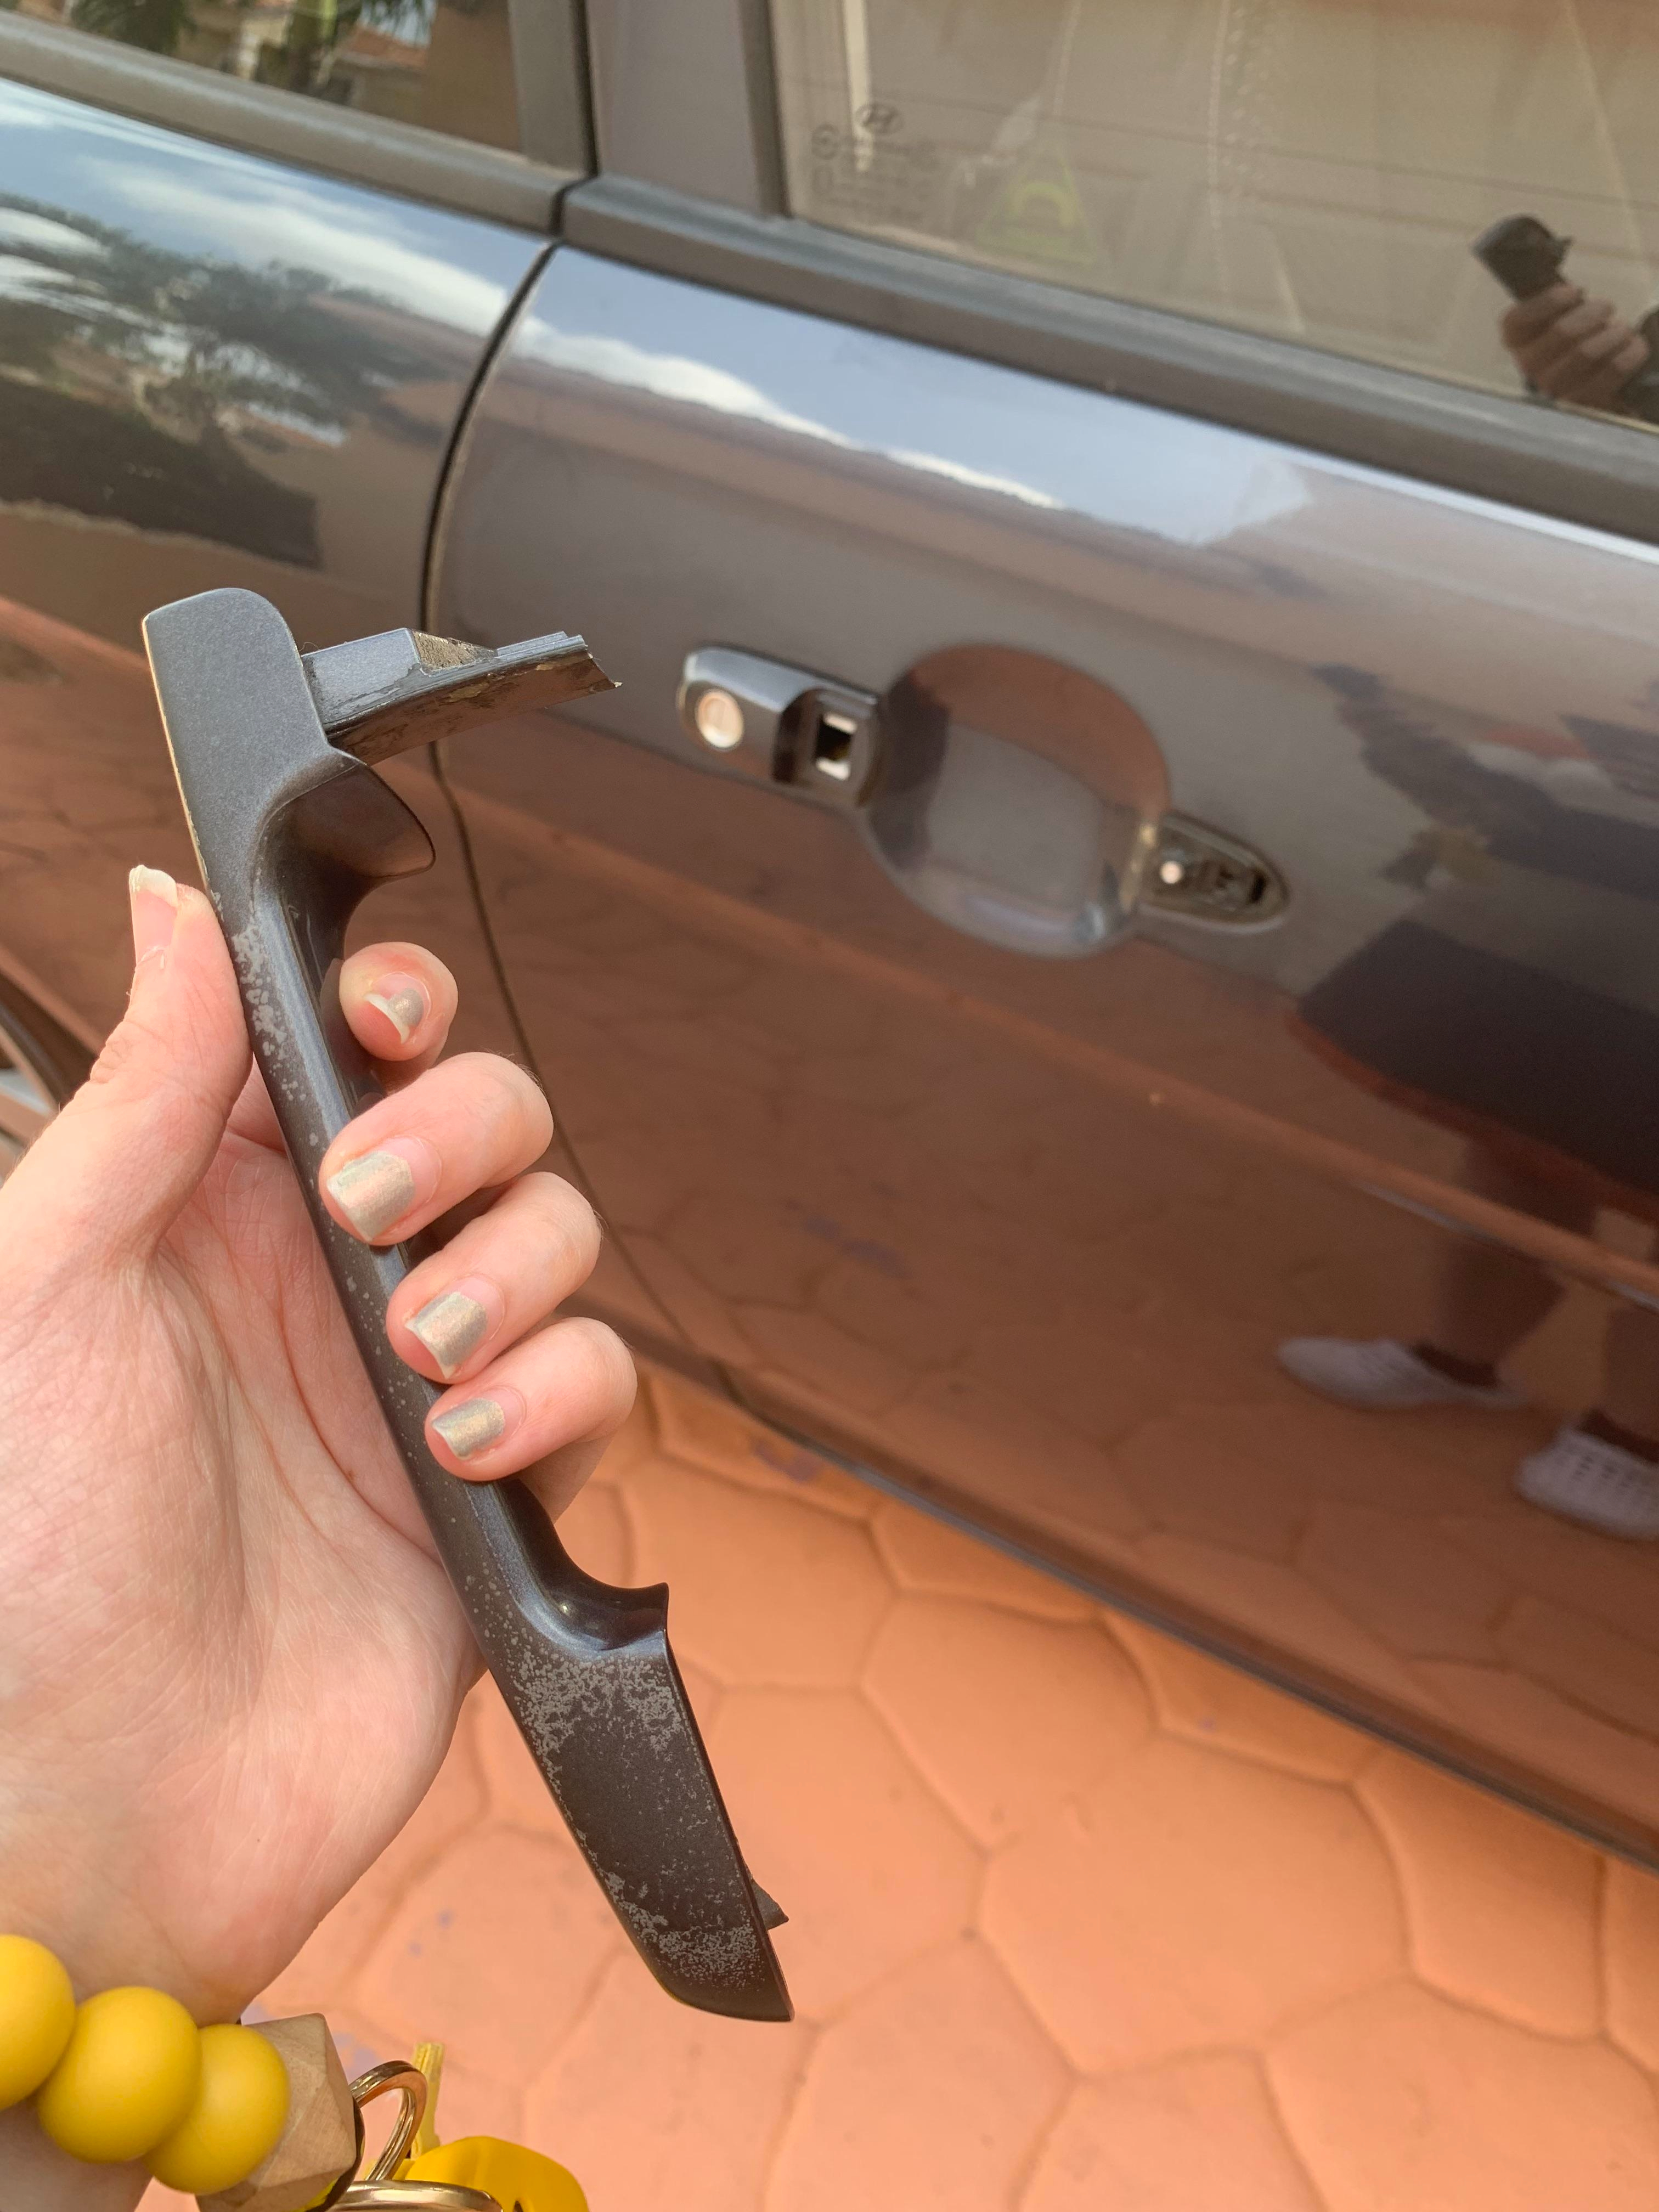 A broken door handle